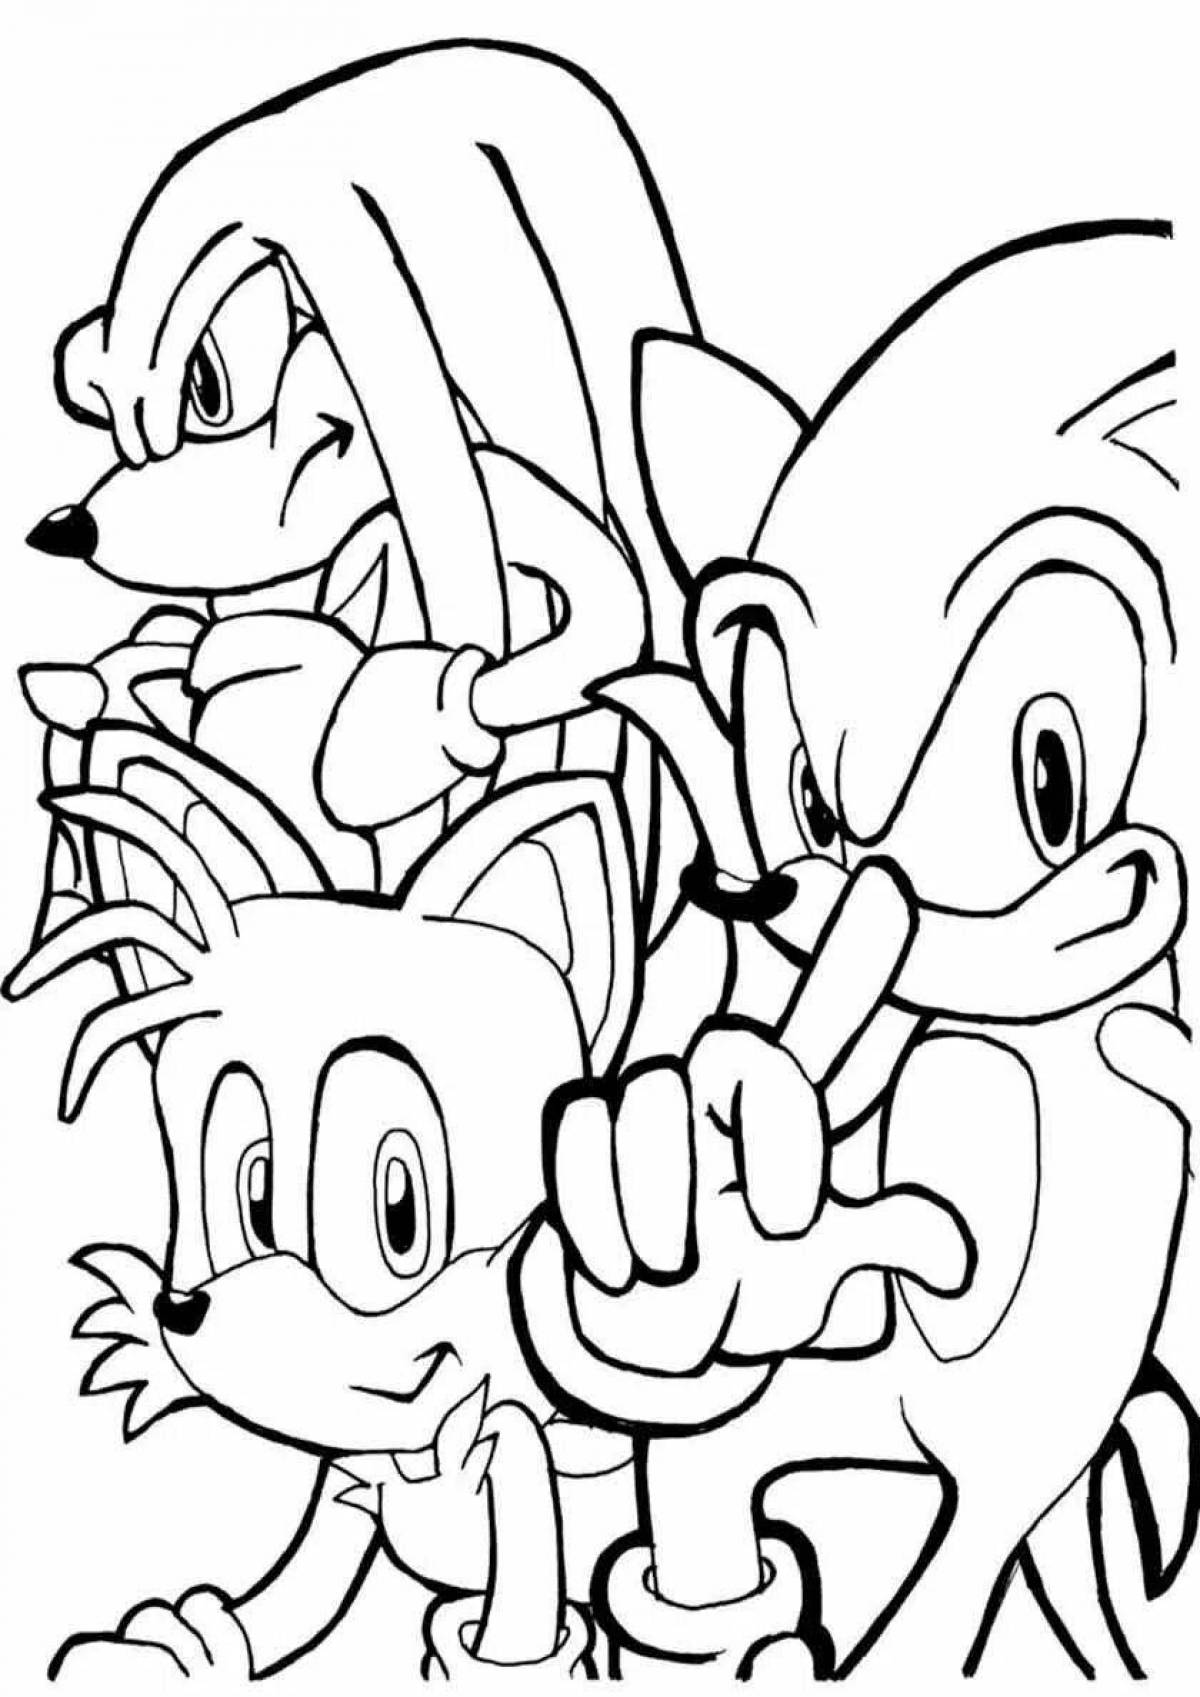 Sonic seal fun coloring